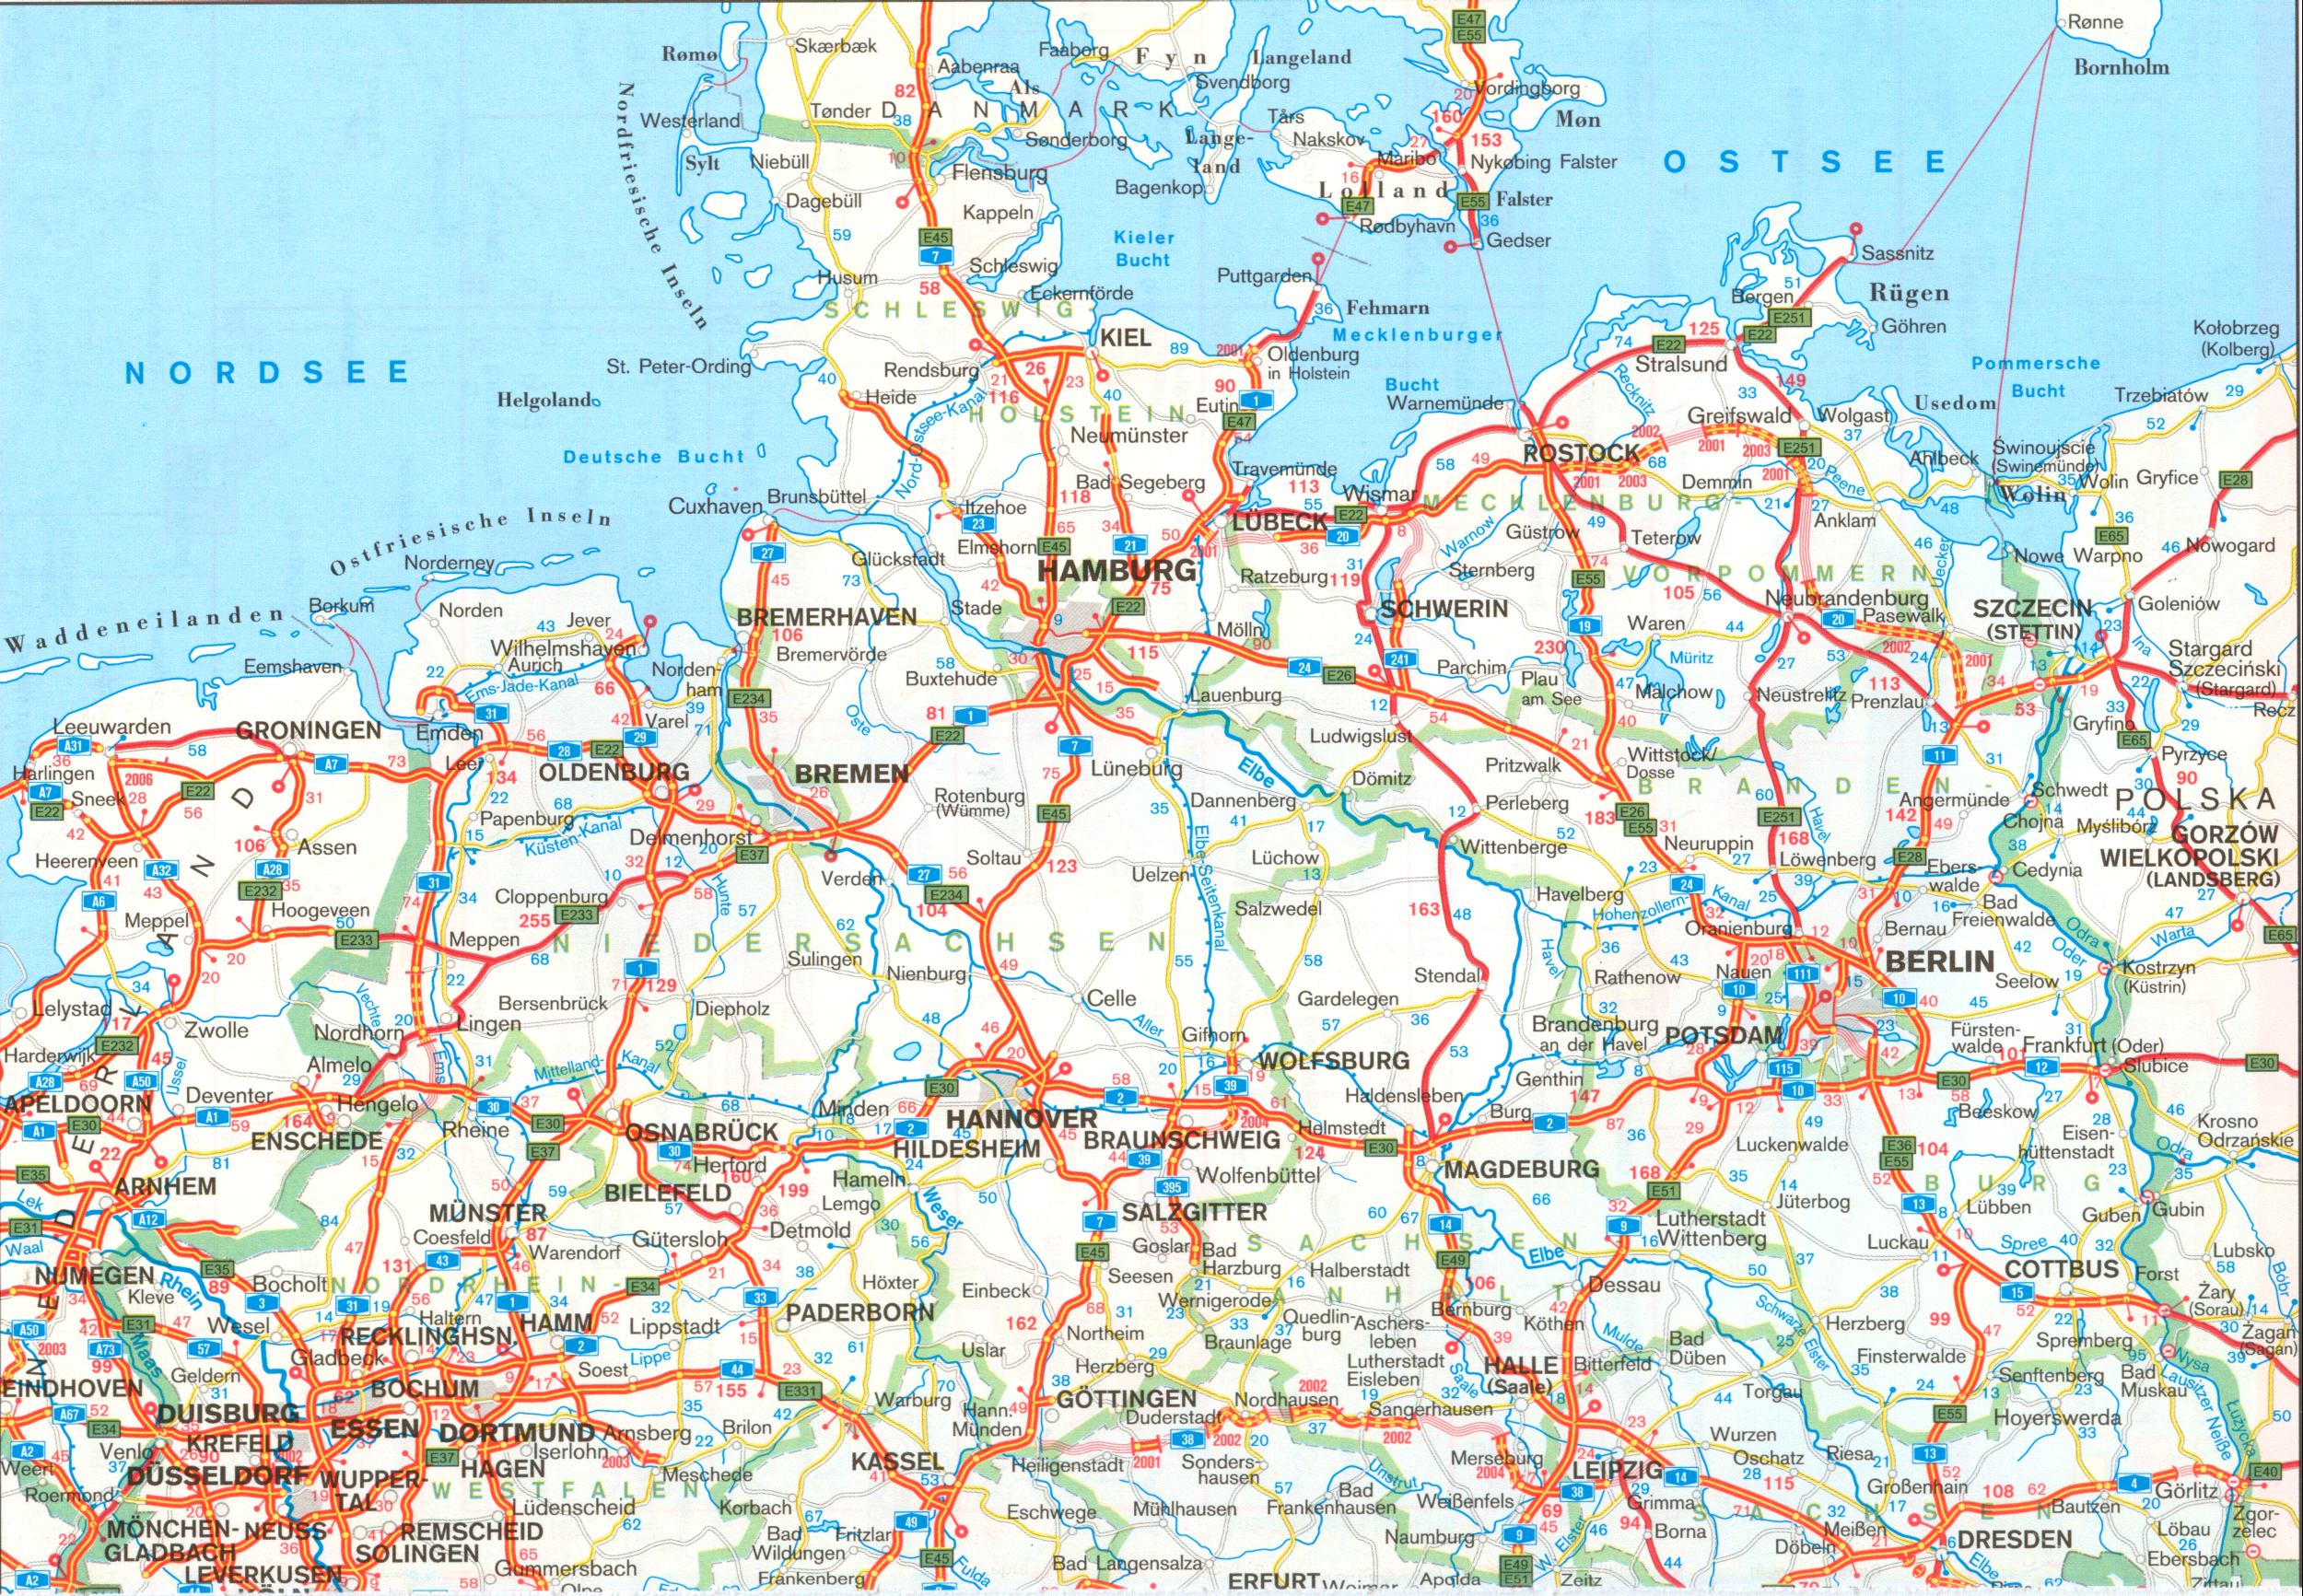 Автомобильная карта Германии. Подробная карта автомобильных дорог